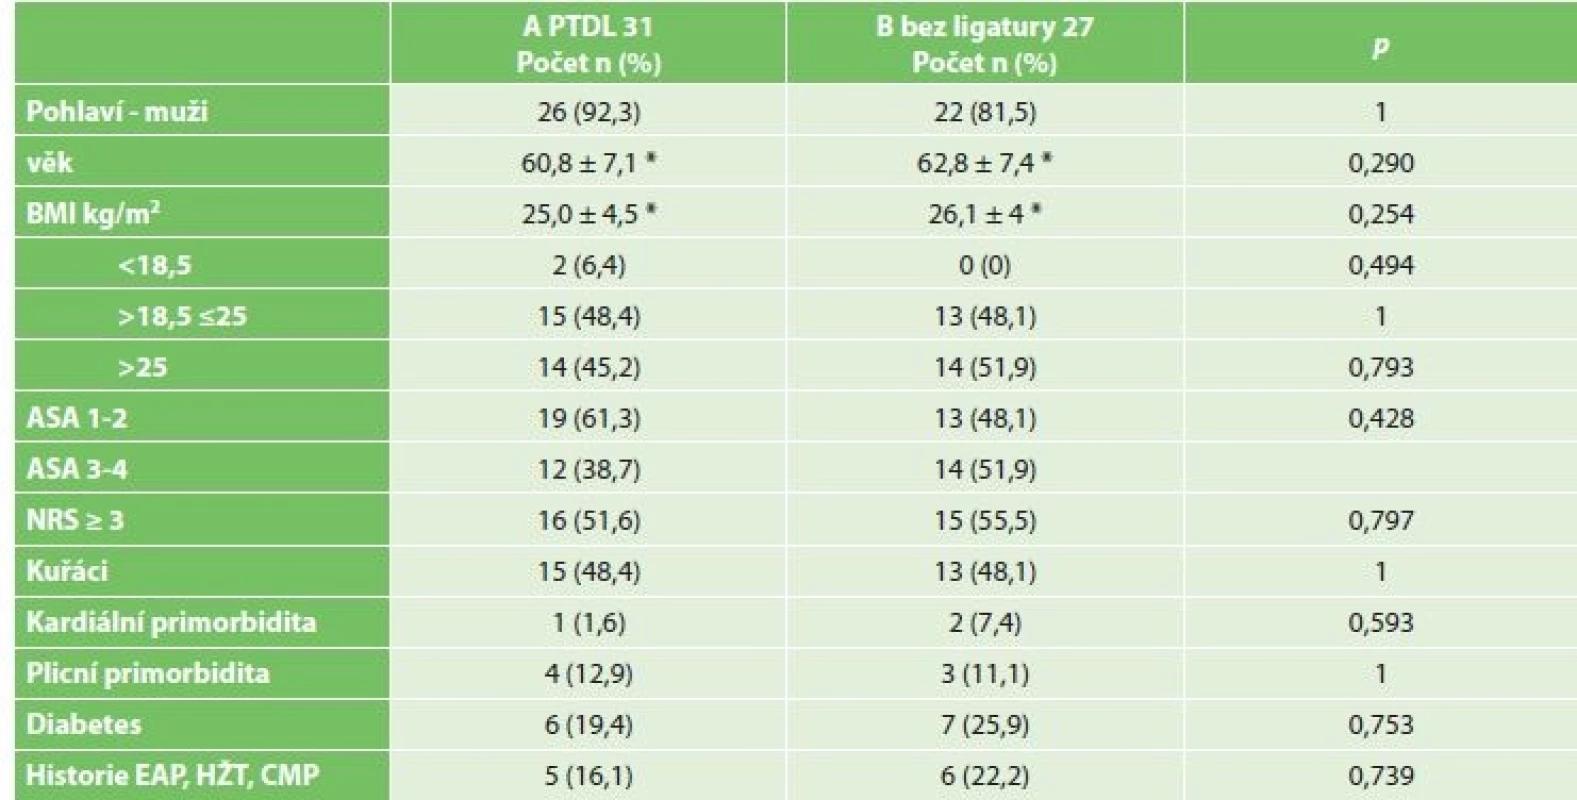 Srovnání základní charakteristiky demografických dat souborů s PTDL (A PTDL) a souboru B bez ligatury<br>
Tab. 2: Comparison of clinical characteristics of patients with PTDL (A PTDL) and without any ligation (B)